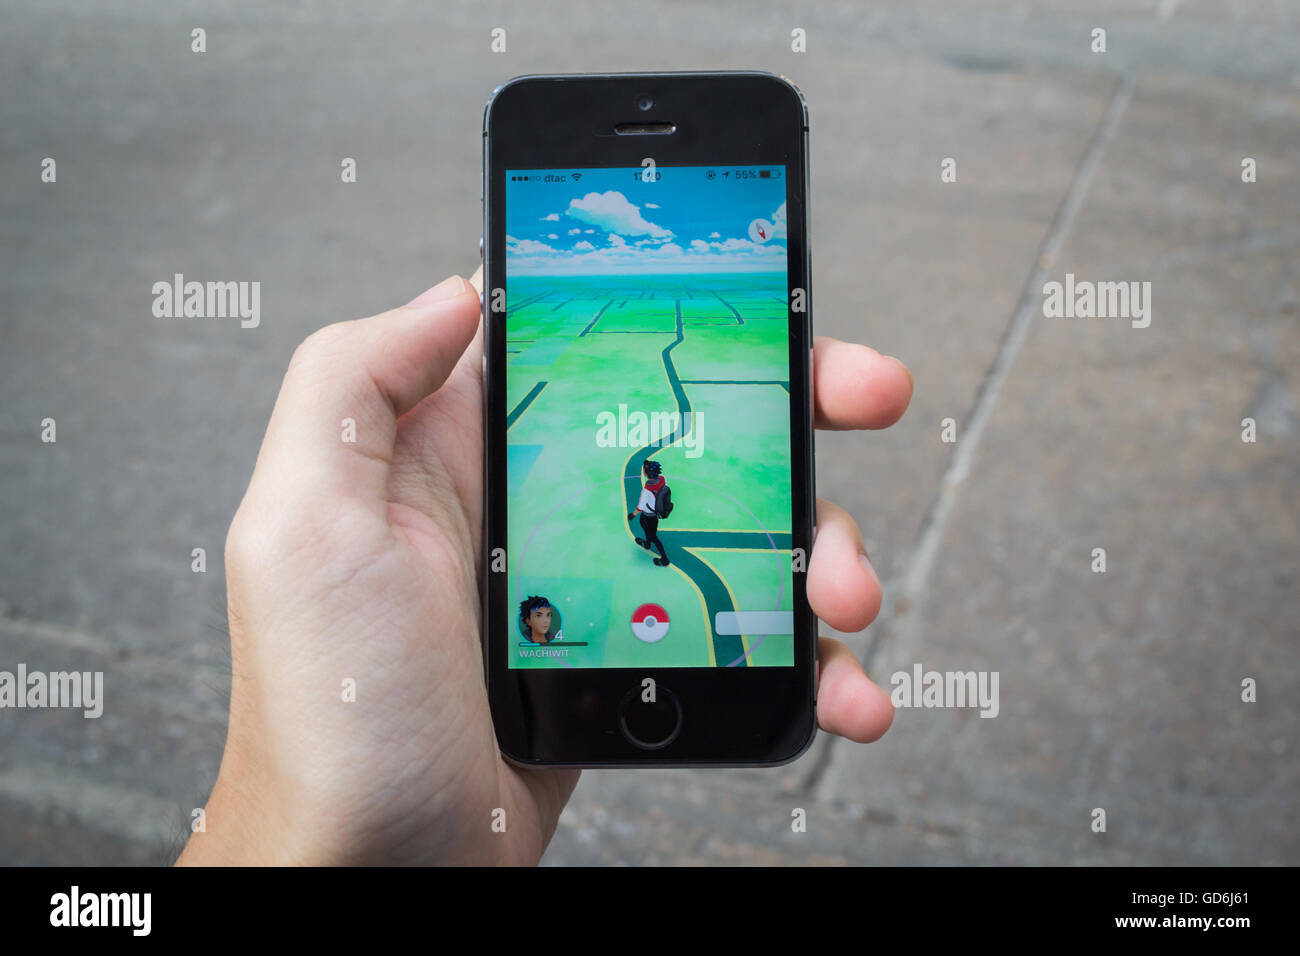 Bangkok, Thailand - 11. Juli 2016: Apple iPhone5s hielt in einer Hand zeigt seinen Bildschirm mit Pokemon Go Anwendung. Stockfoto